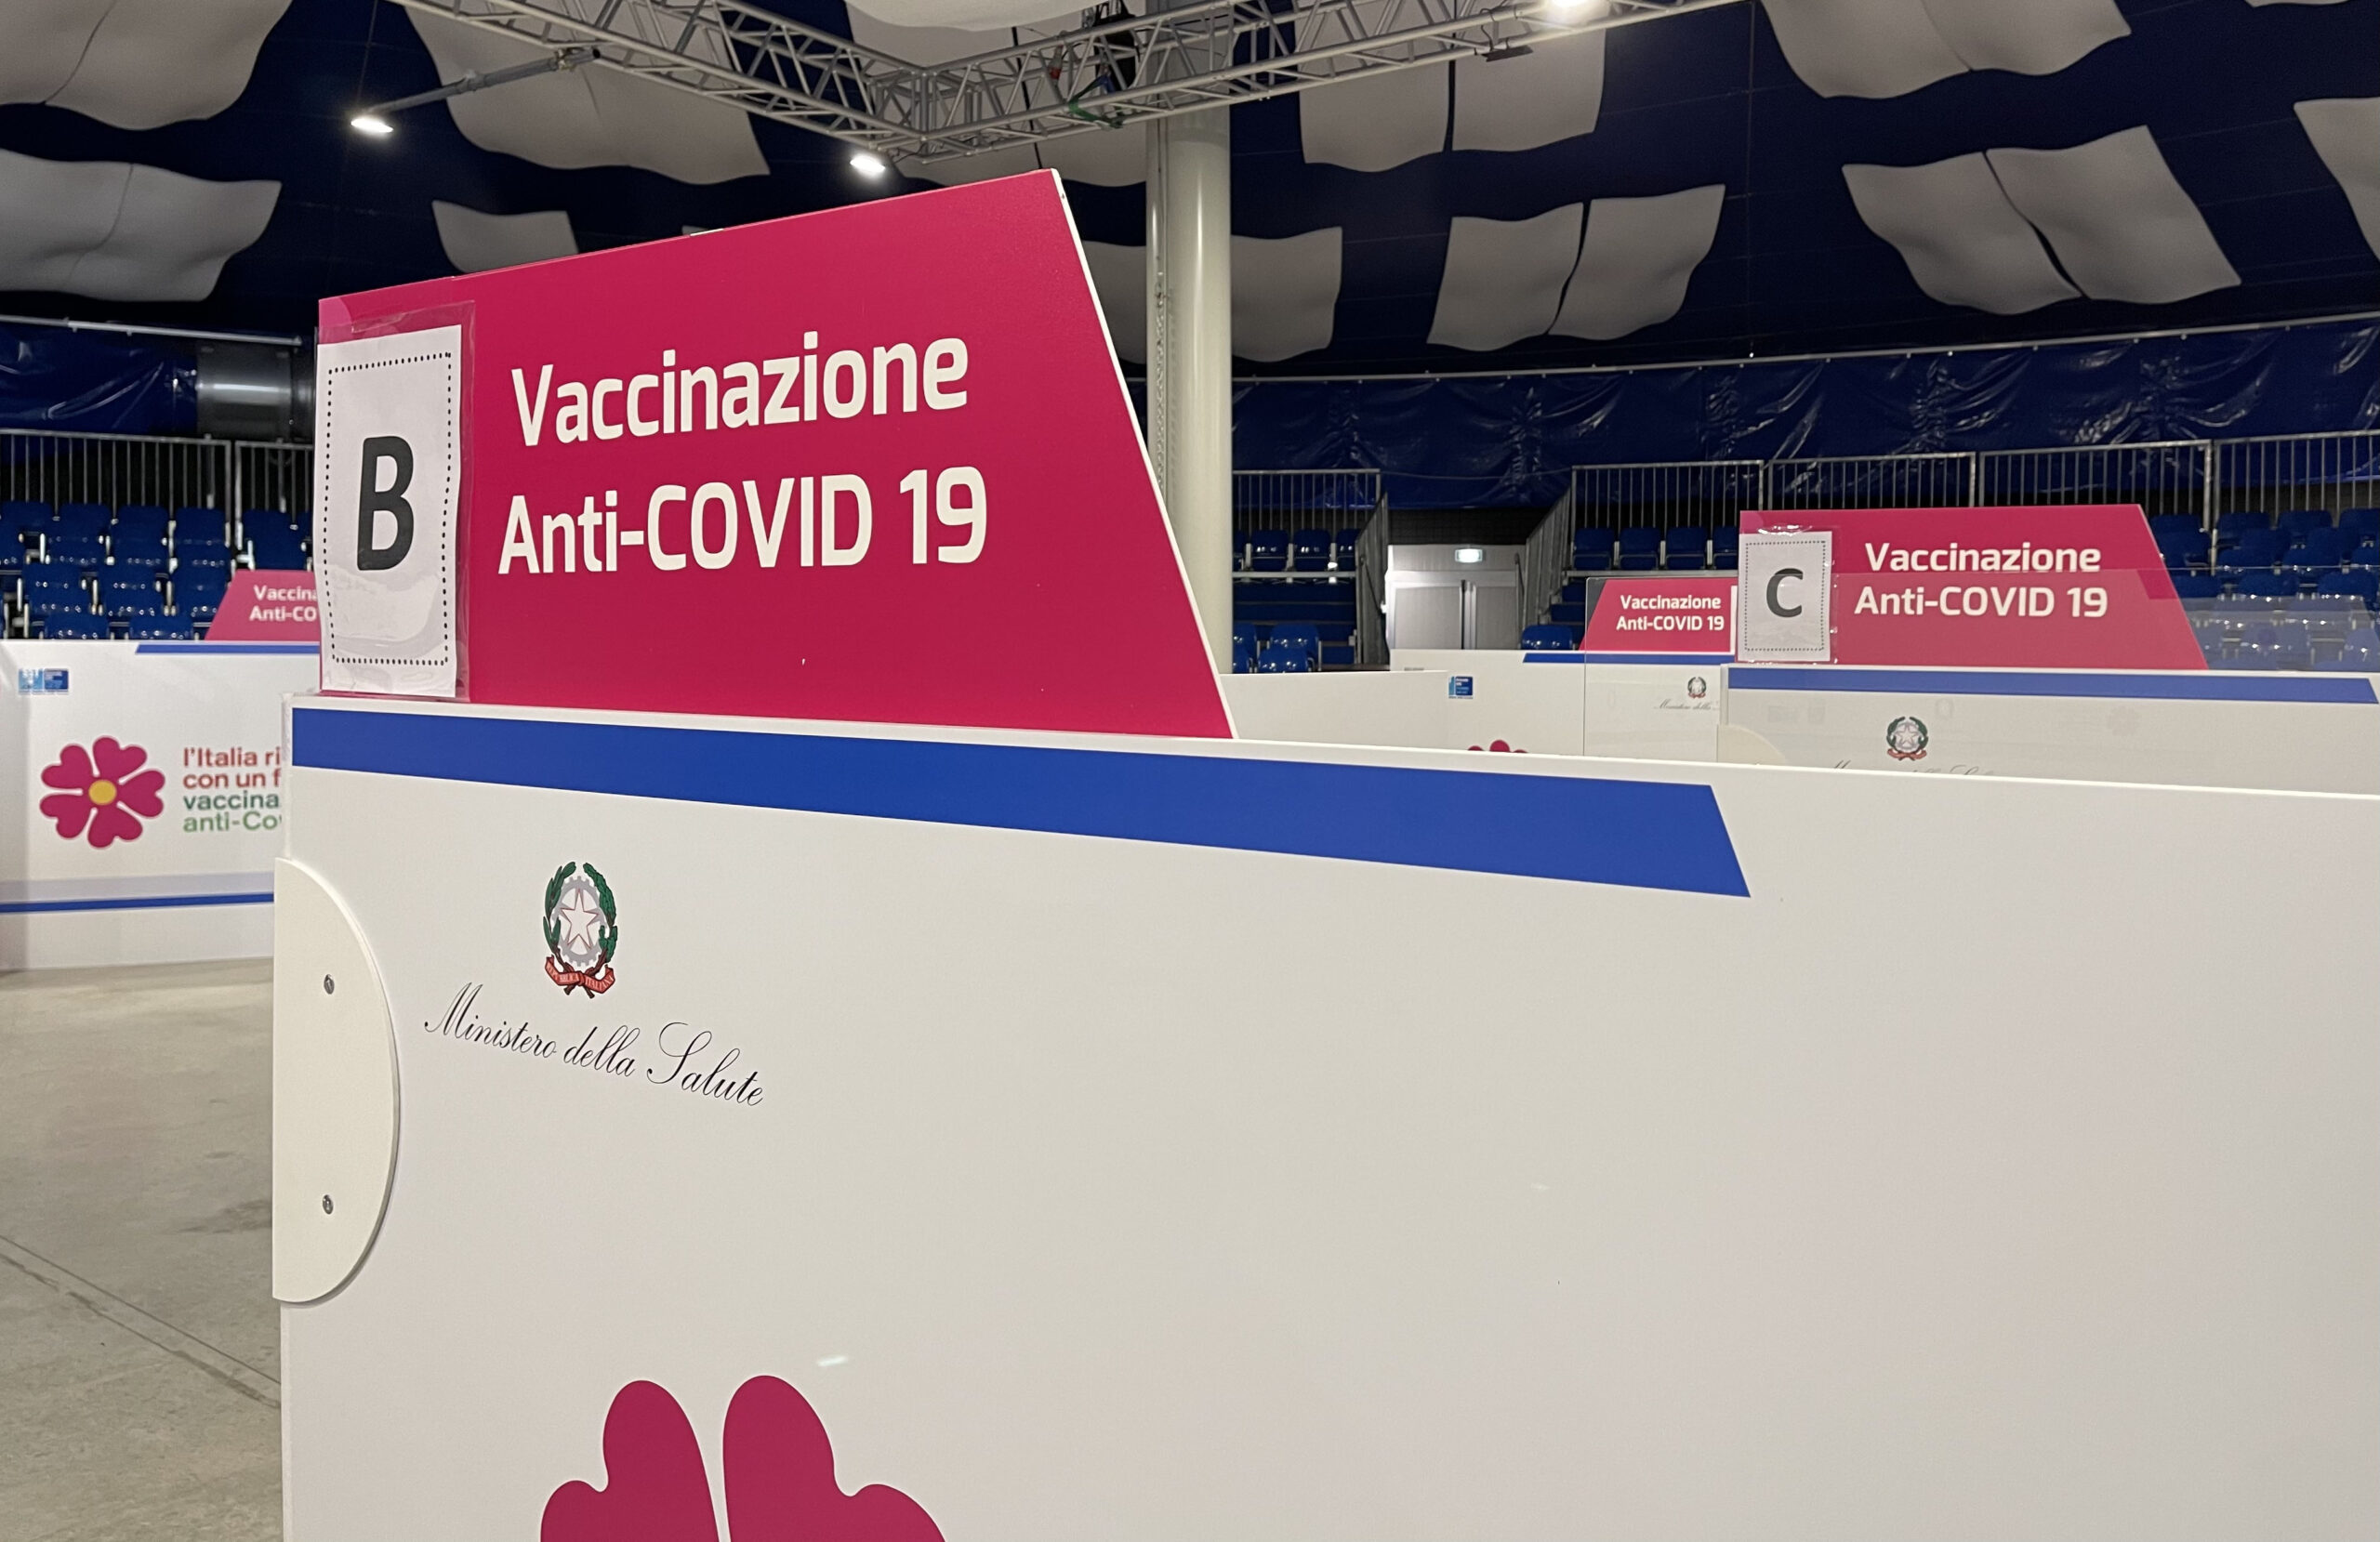 Vaccini, la Toscana tra i giovani: nel fine settimana la campagna di sensibilizzazione